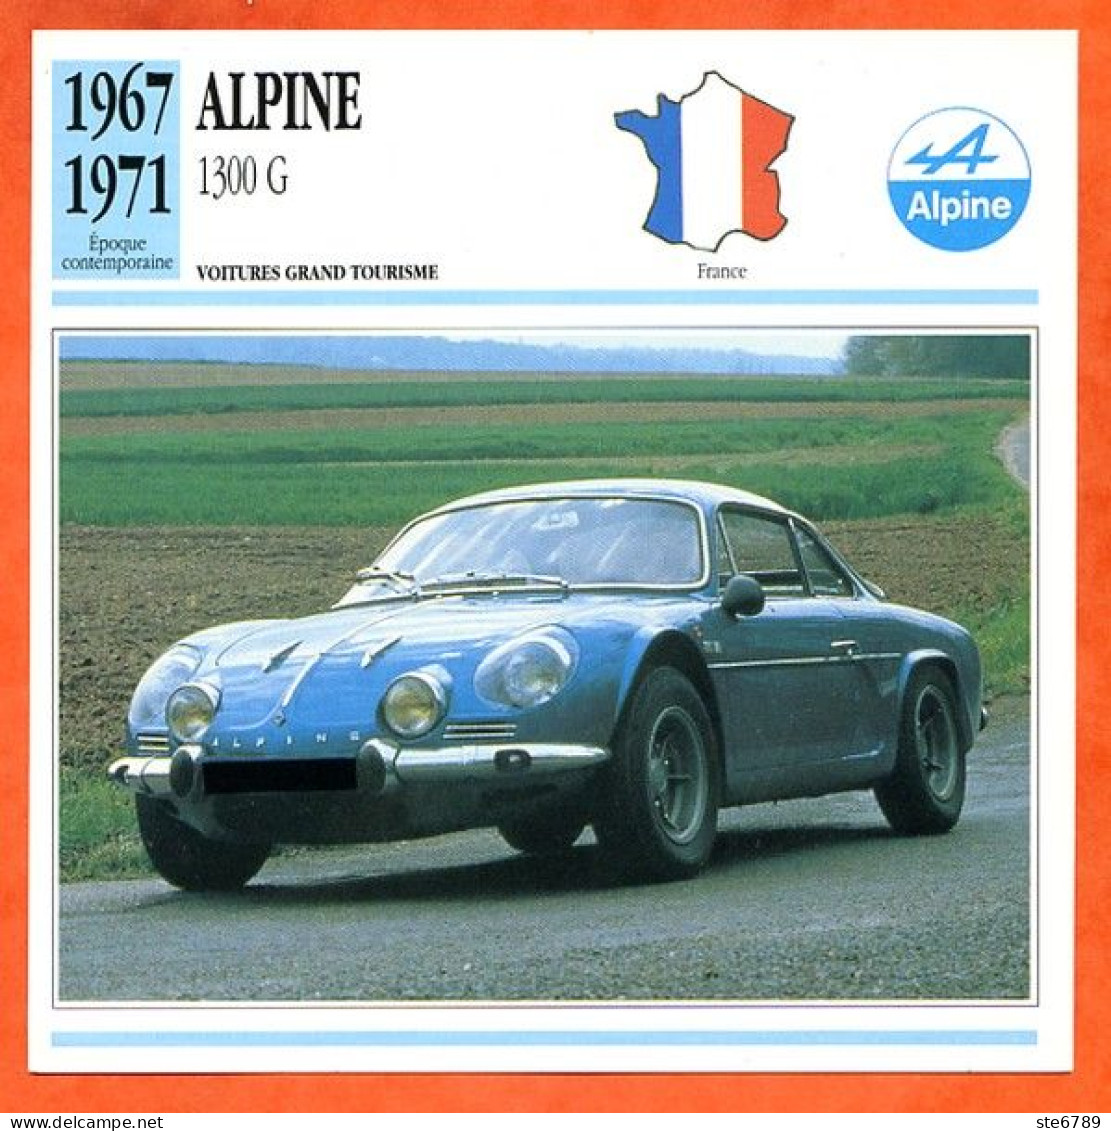 ALPINE 1300 G 1967  Voiture Grand Tourisme France Fiche Technique Automobile - Autos